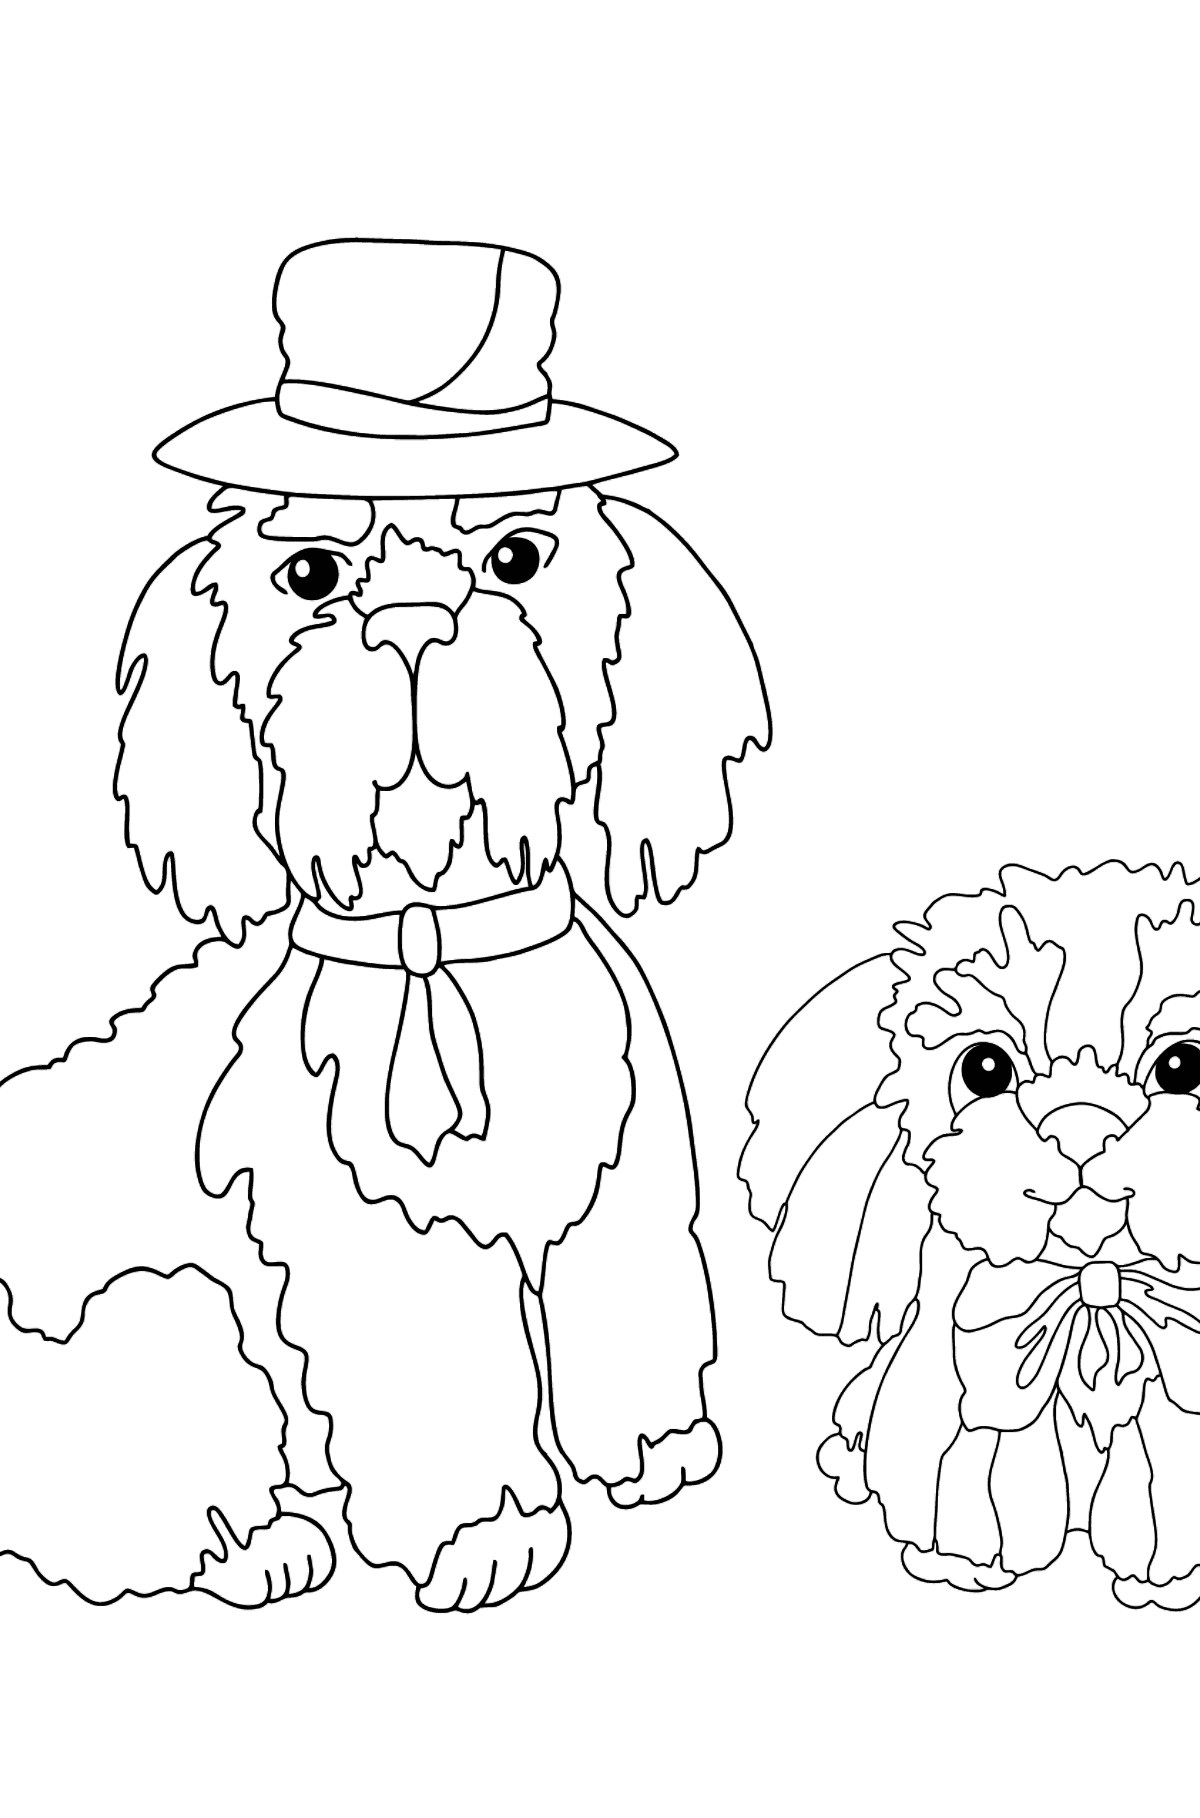 Tegning til fargelegging søte hunder (vanskelig) - Tegninger til fargelegging for barn